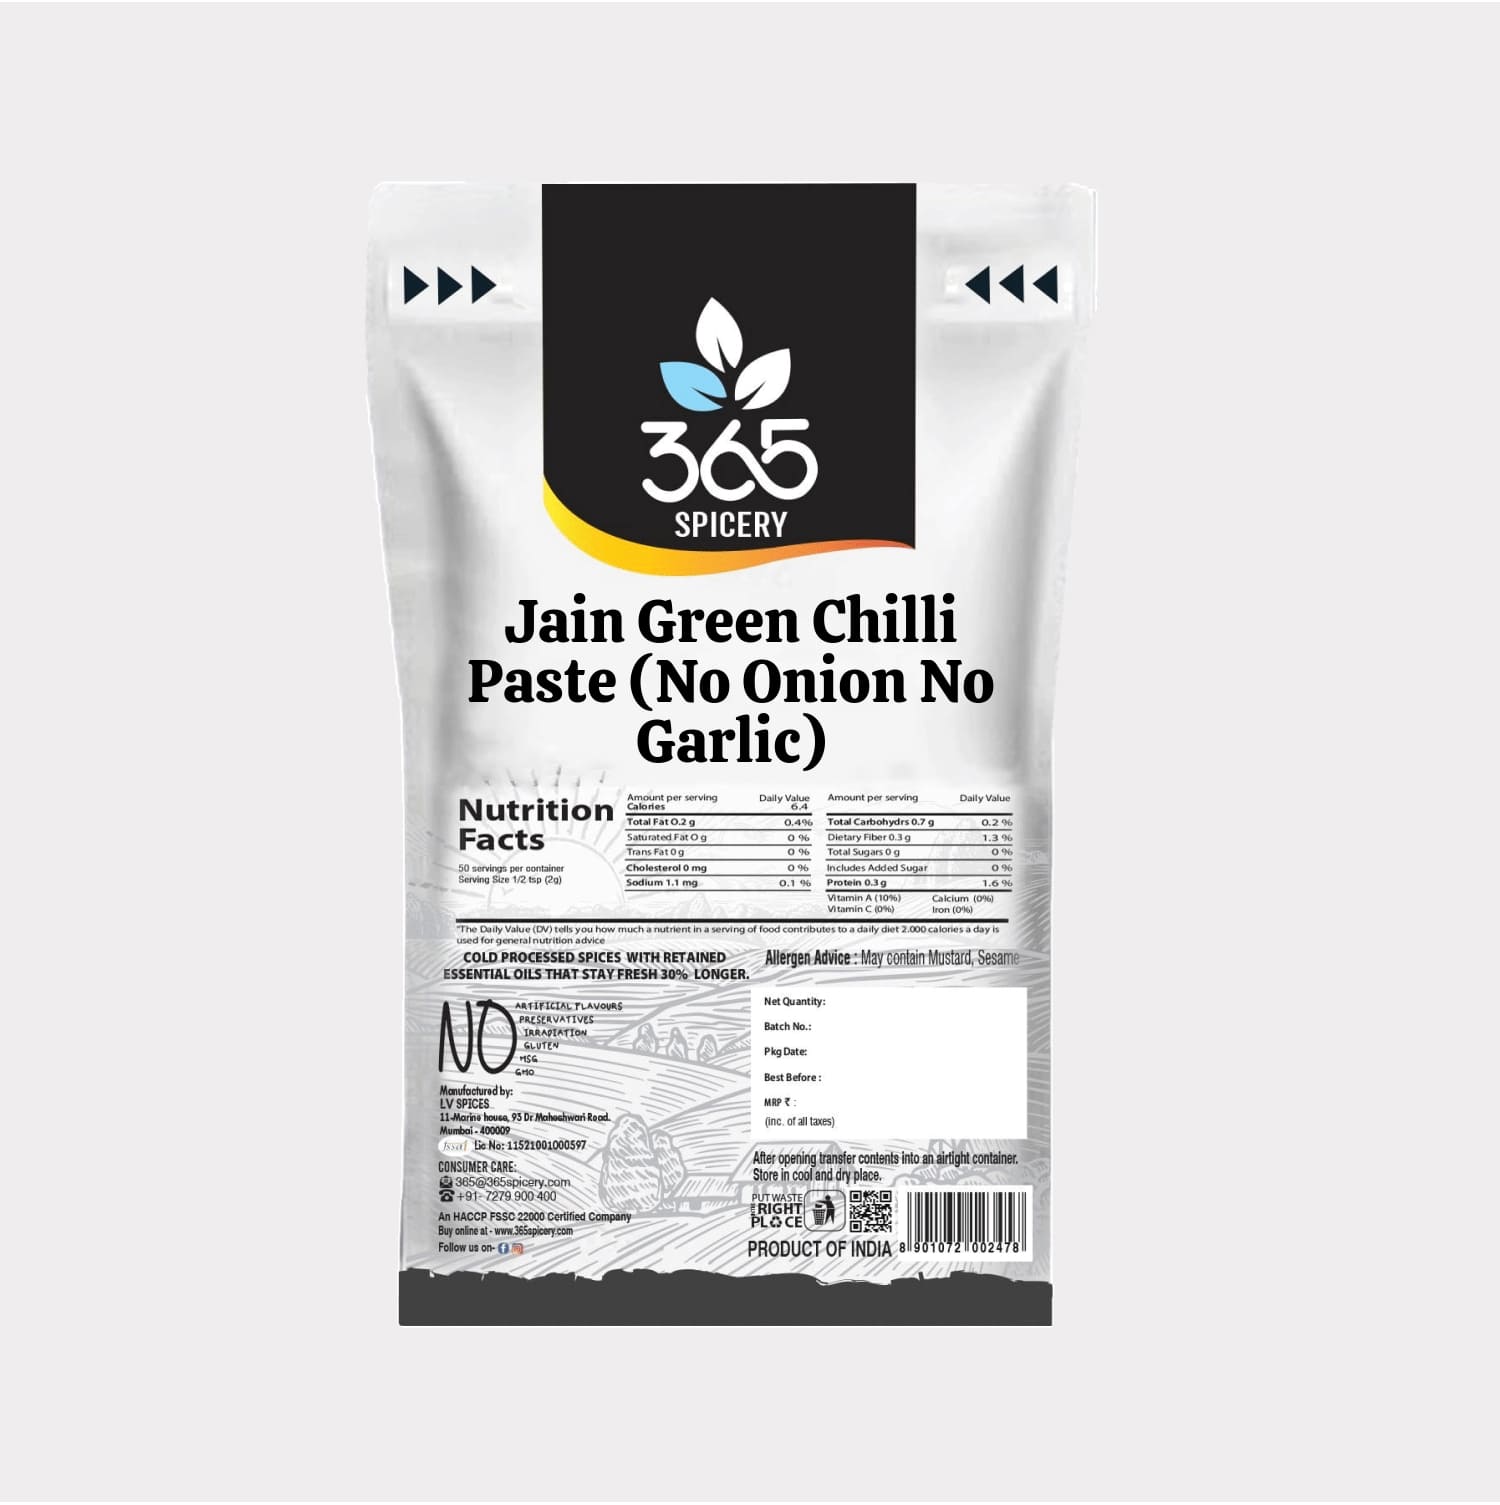 Jain Green Chilli Paste (No Onion No Garlic)